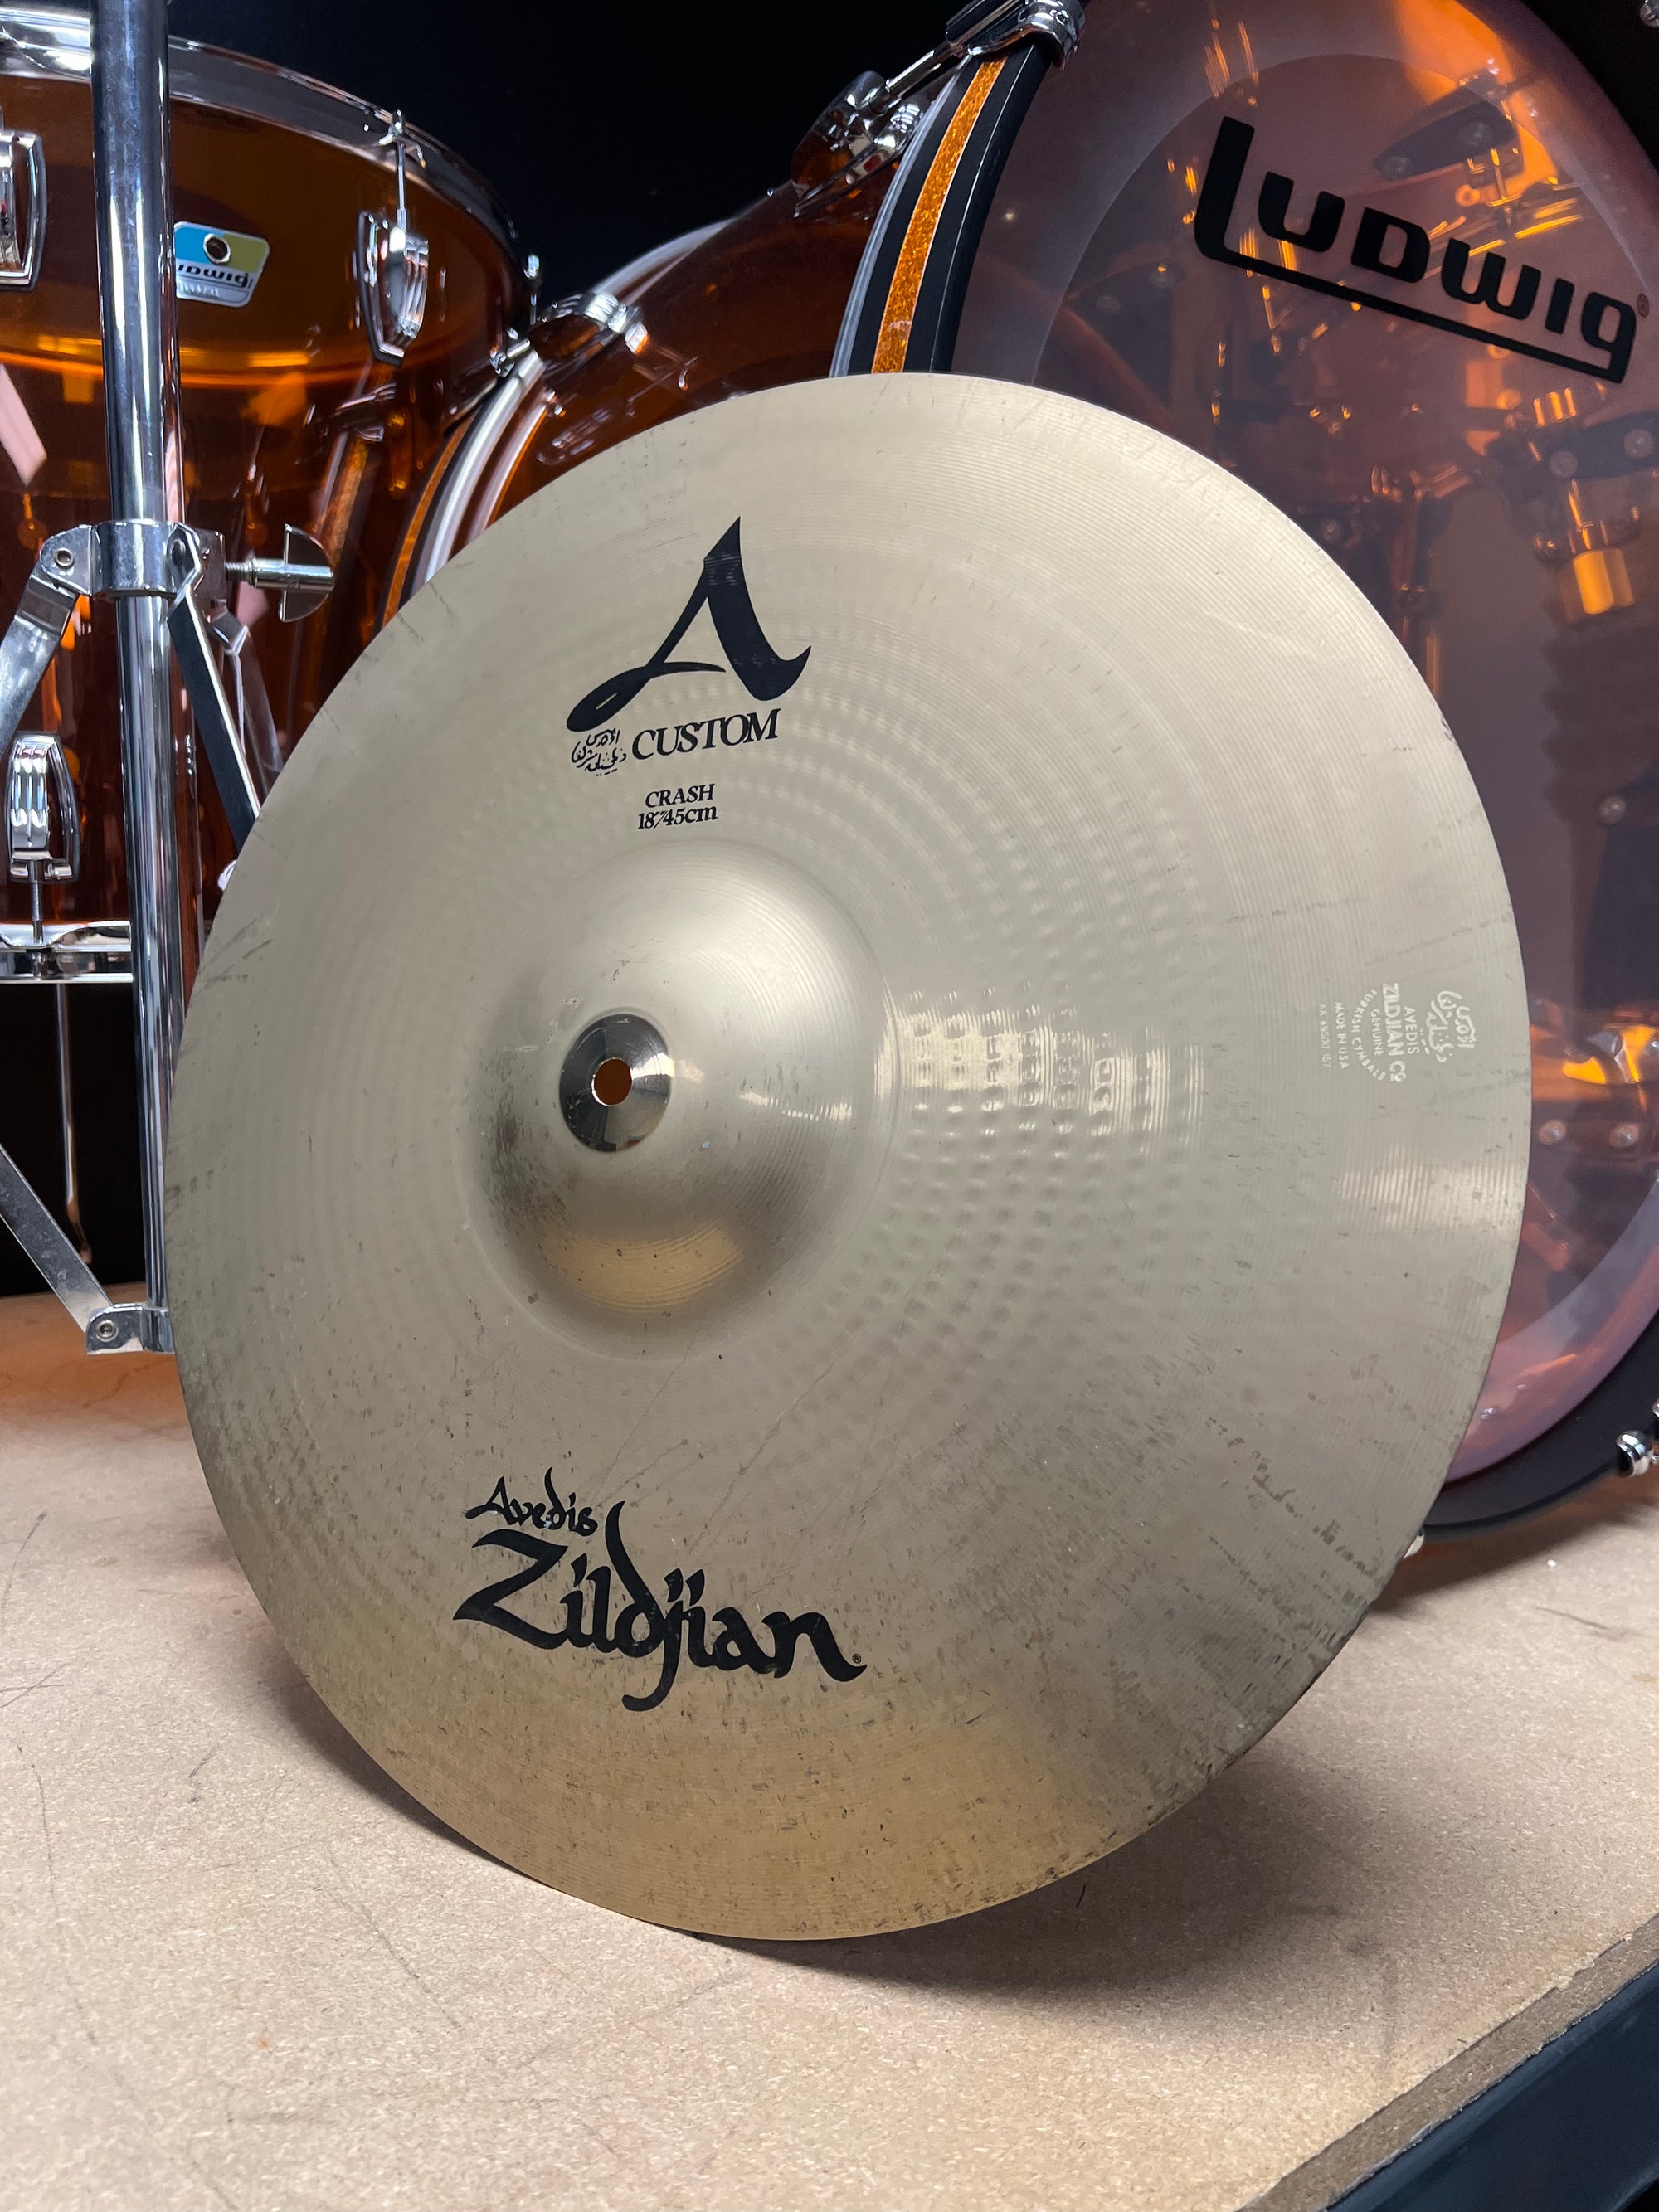 Zildjian 18” A Custom Crash Cymbal